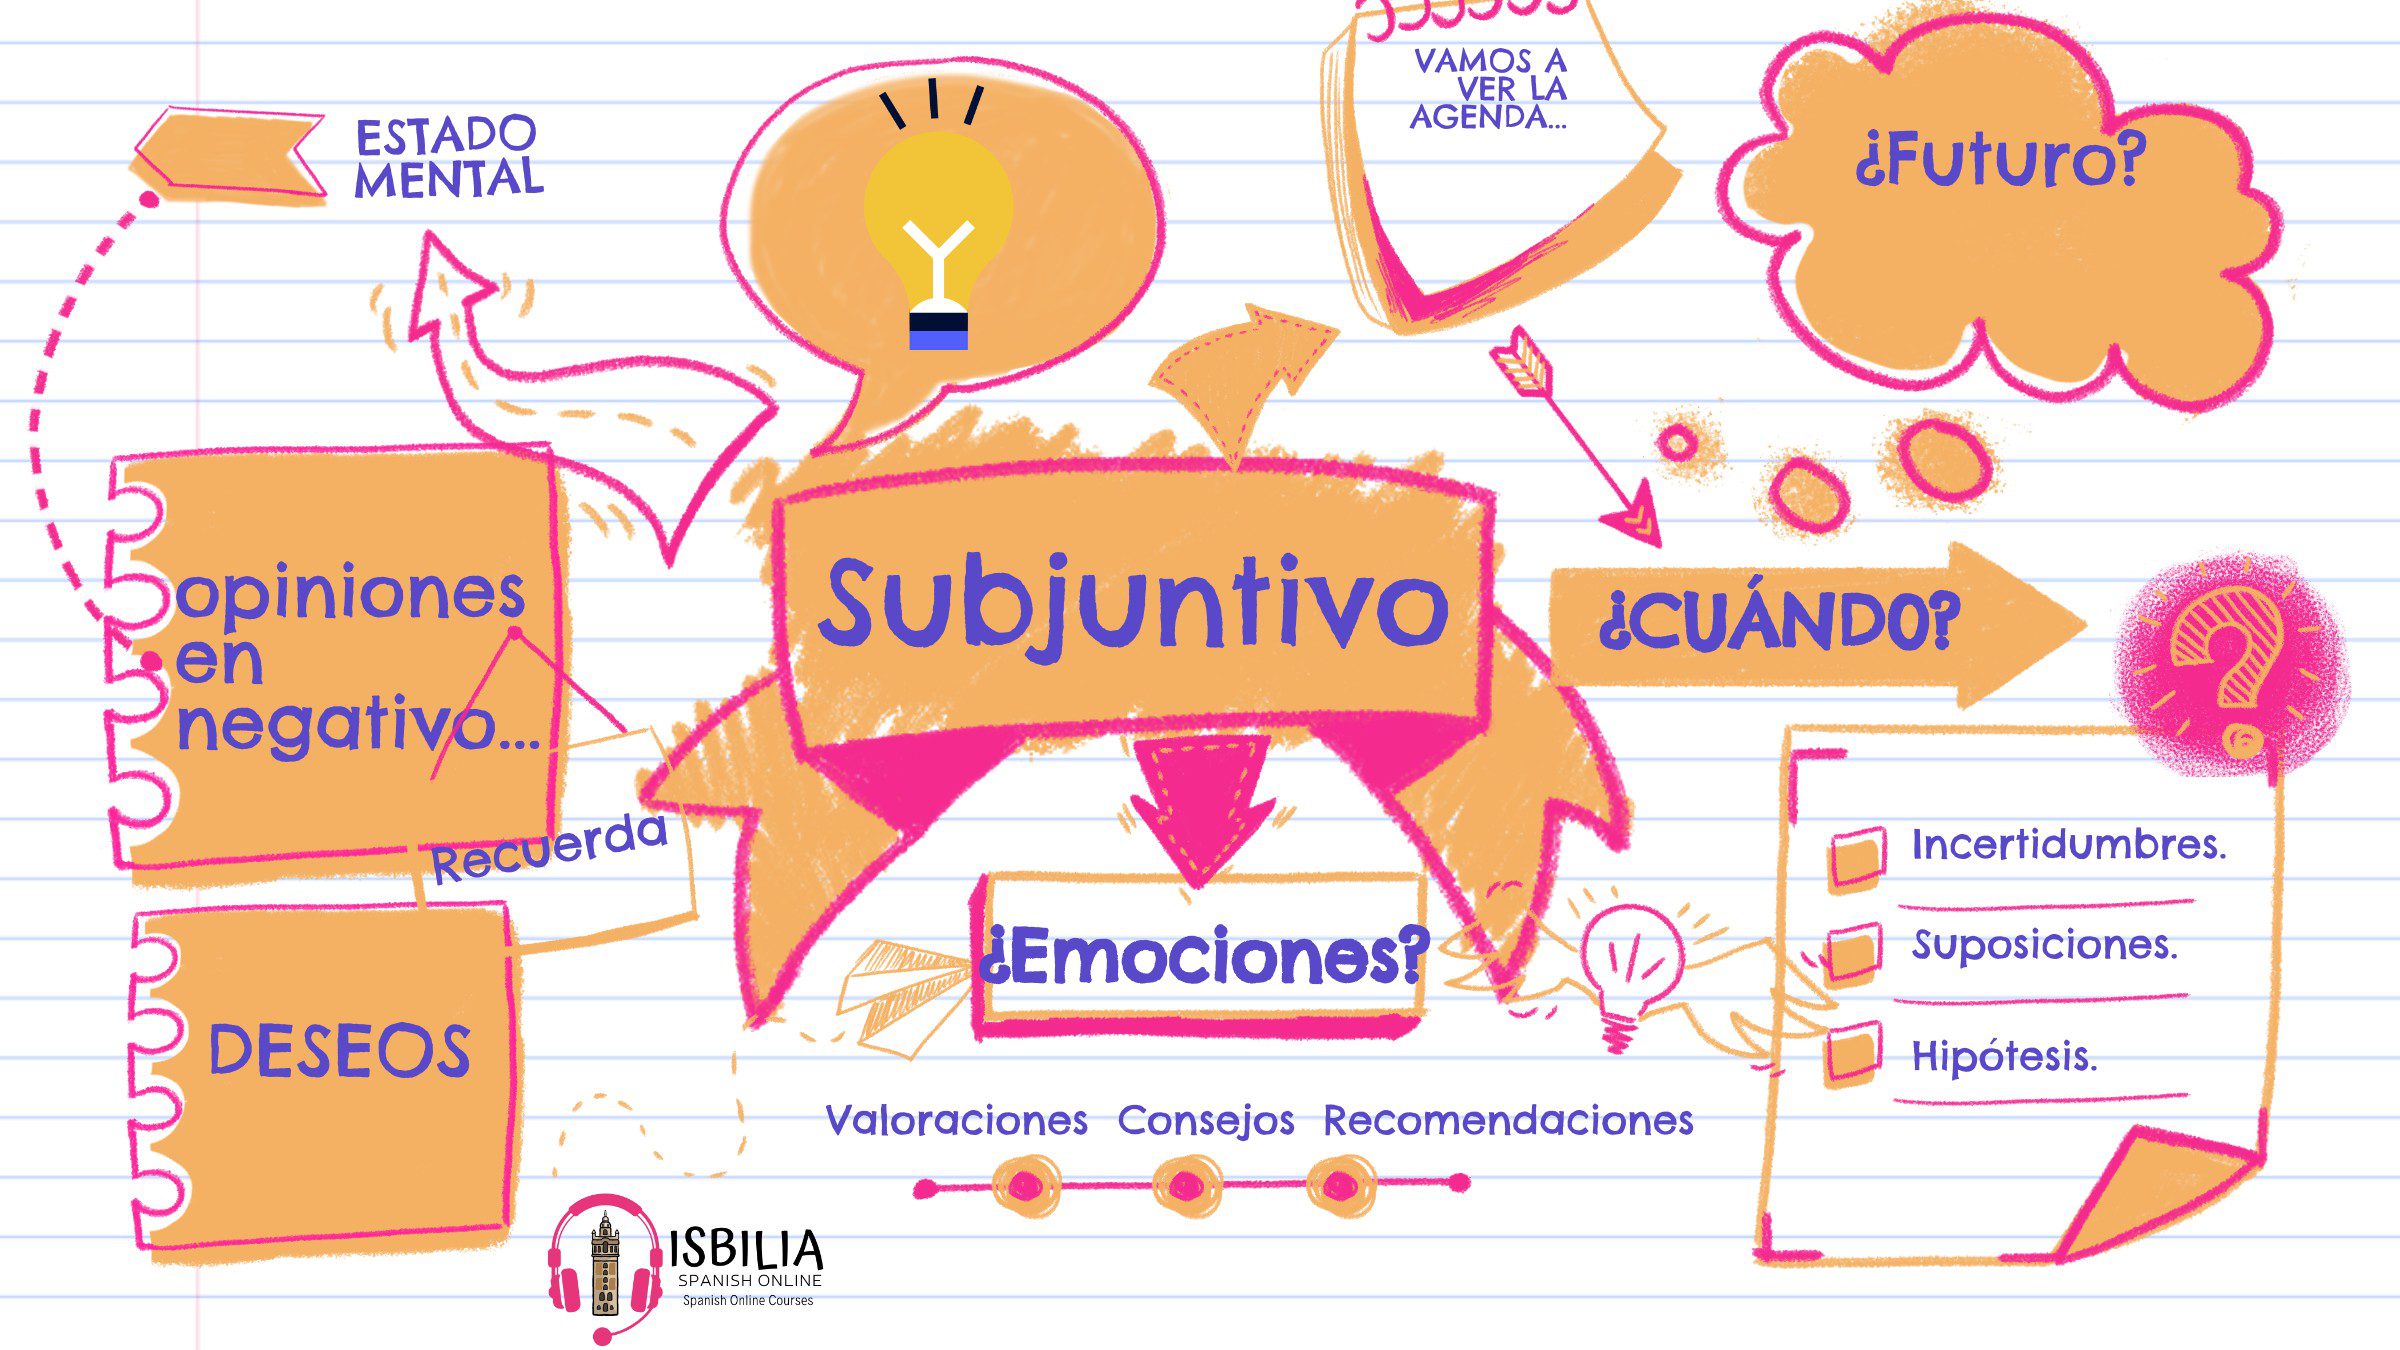 ¿Cómo funciona el subjuntivo en español?